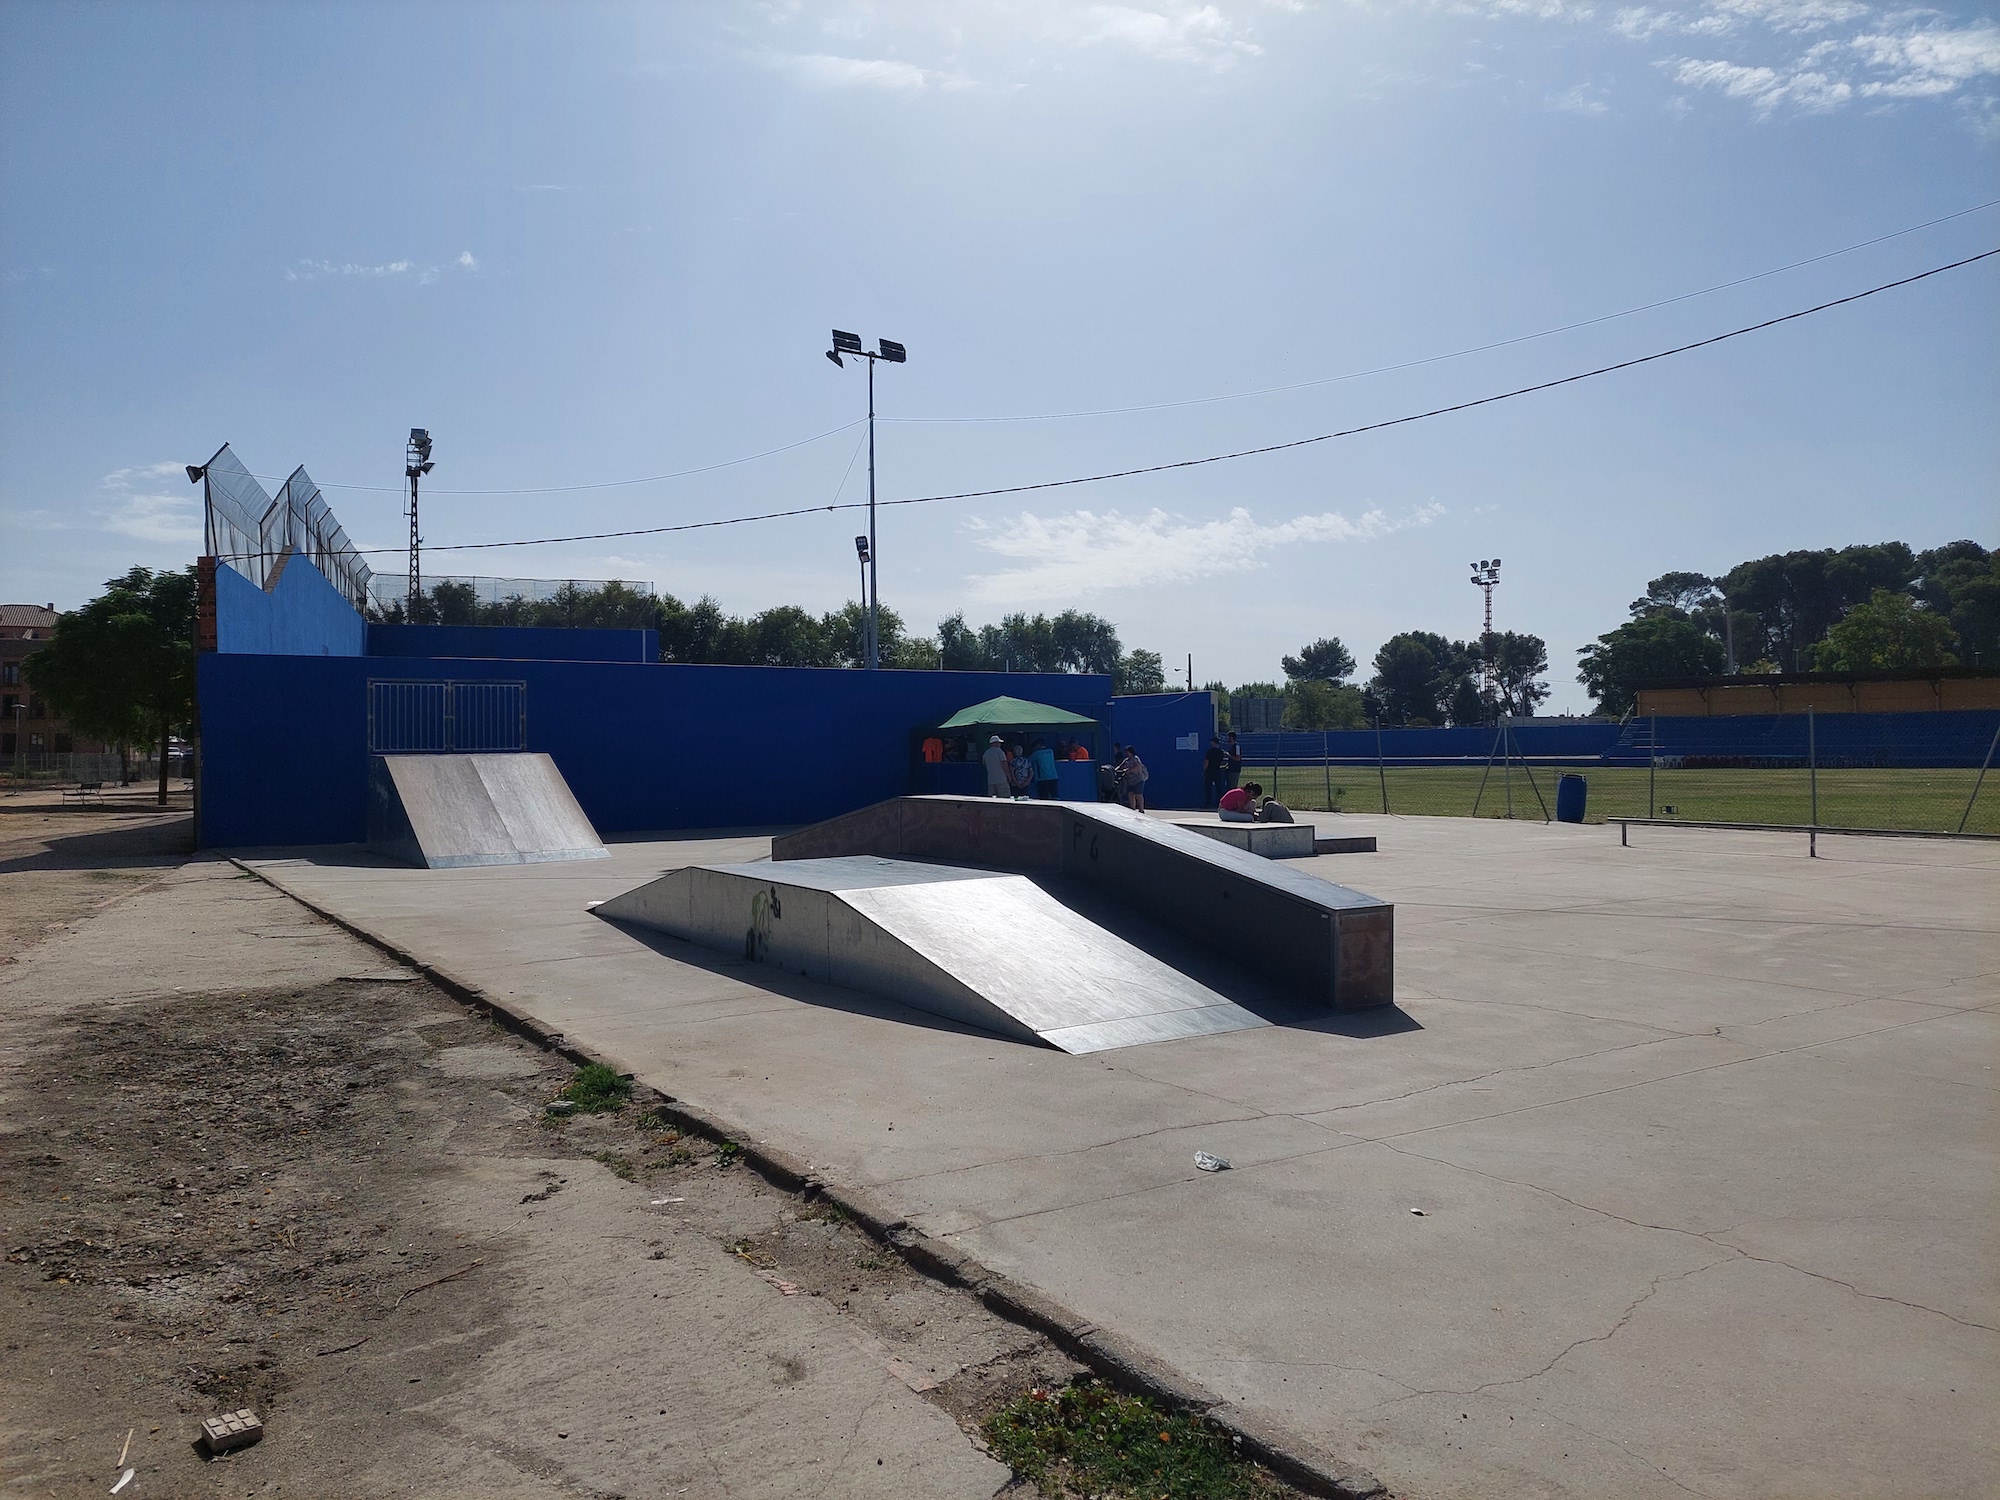 Yuncos skatepark